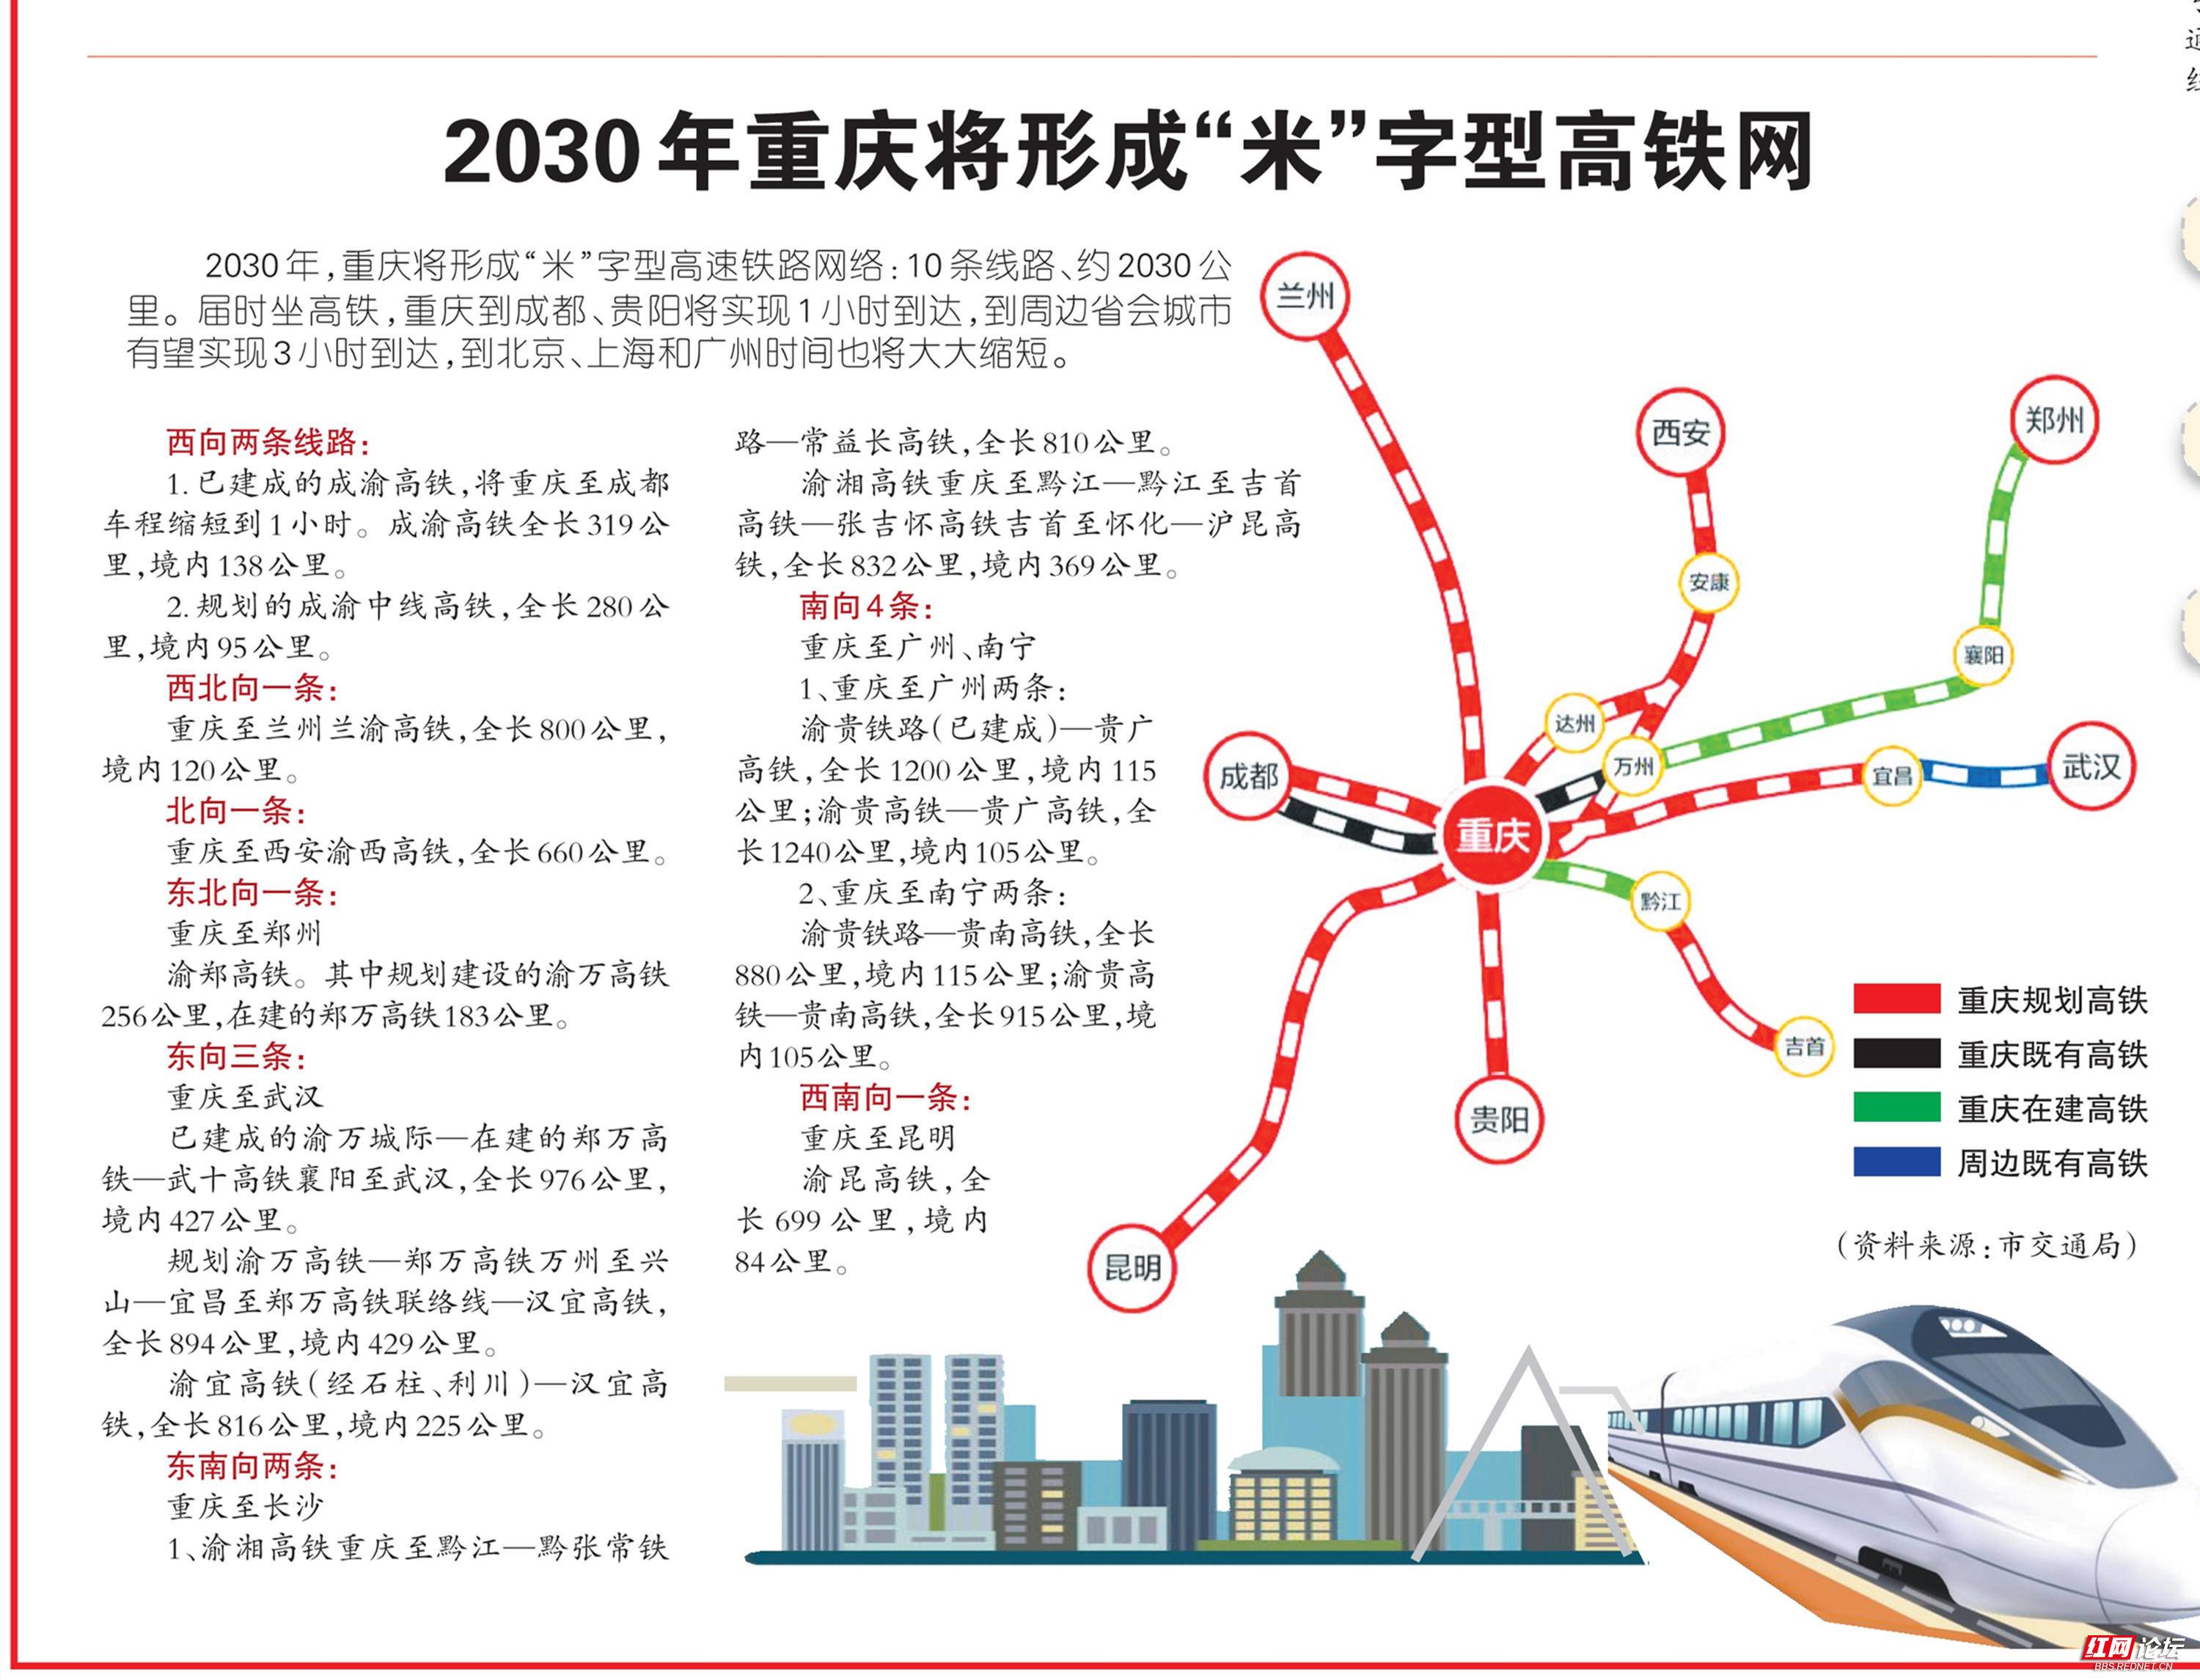 2030年重庆将形成米字型高铁网